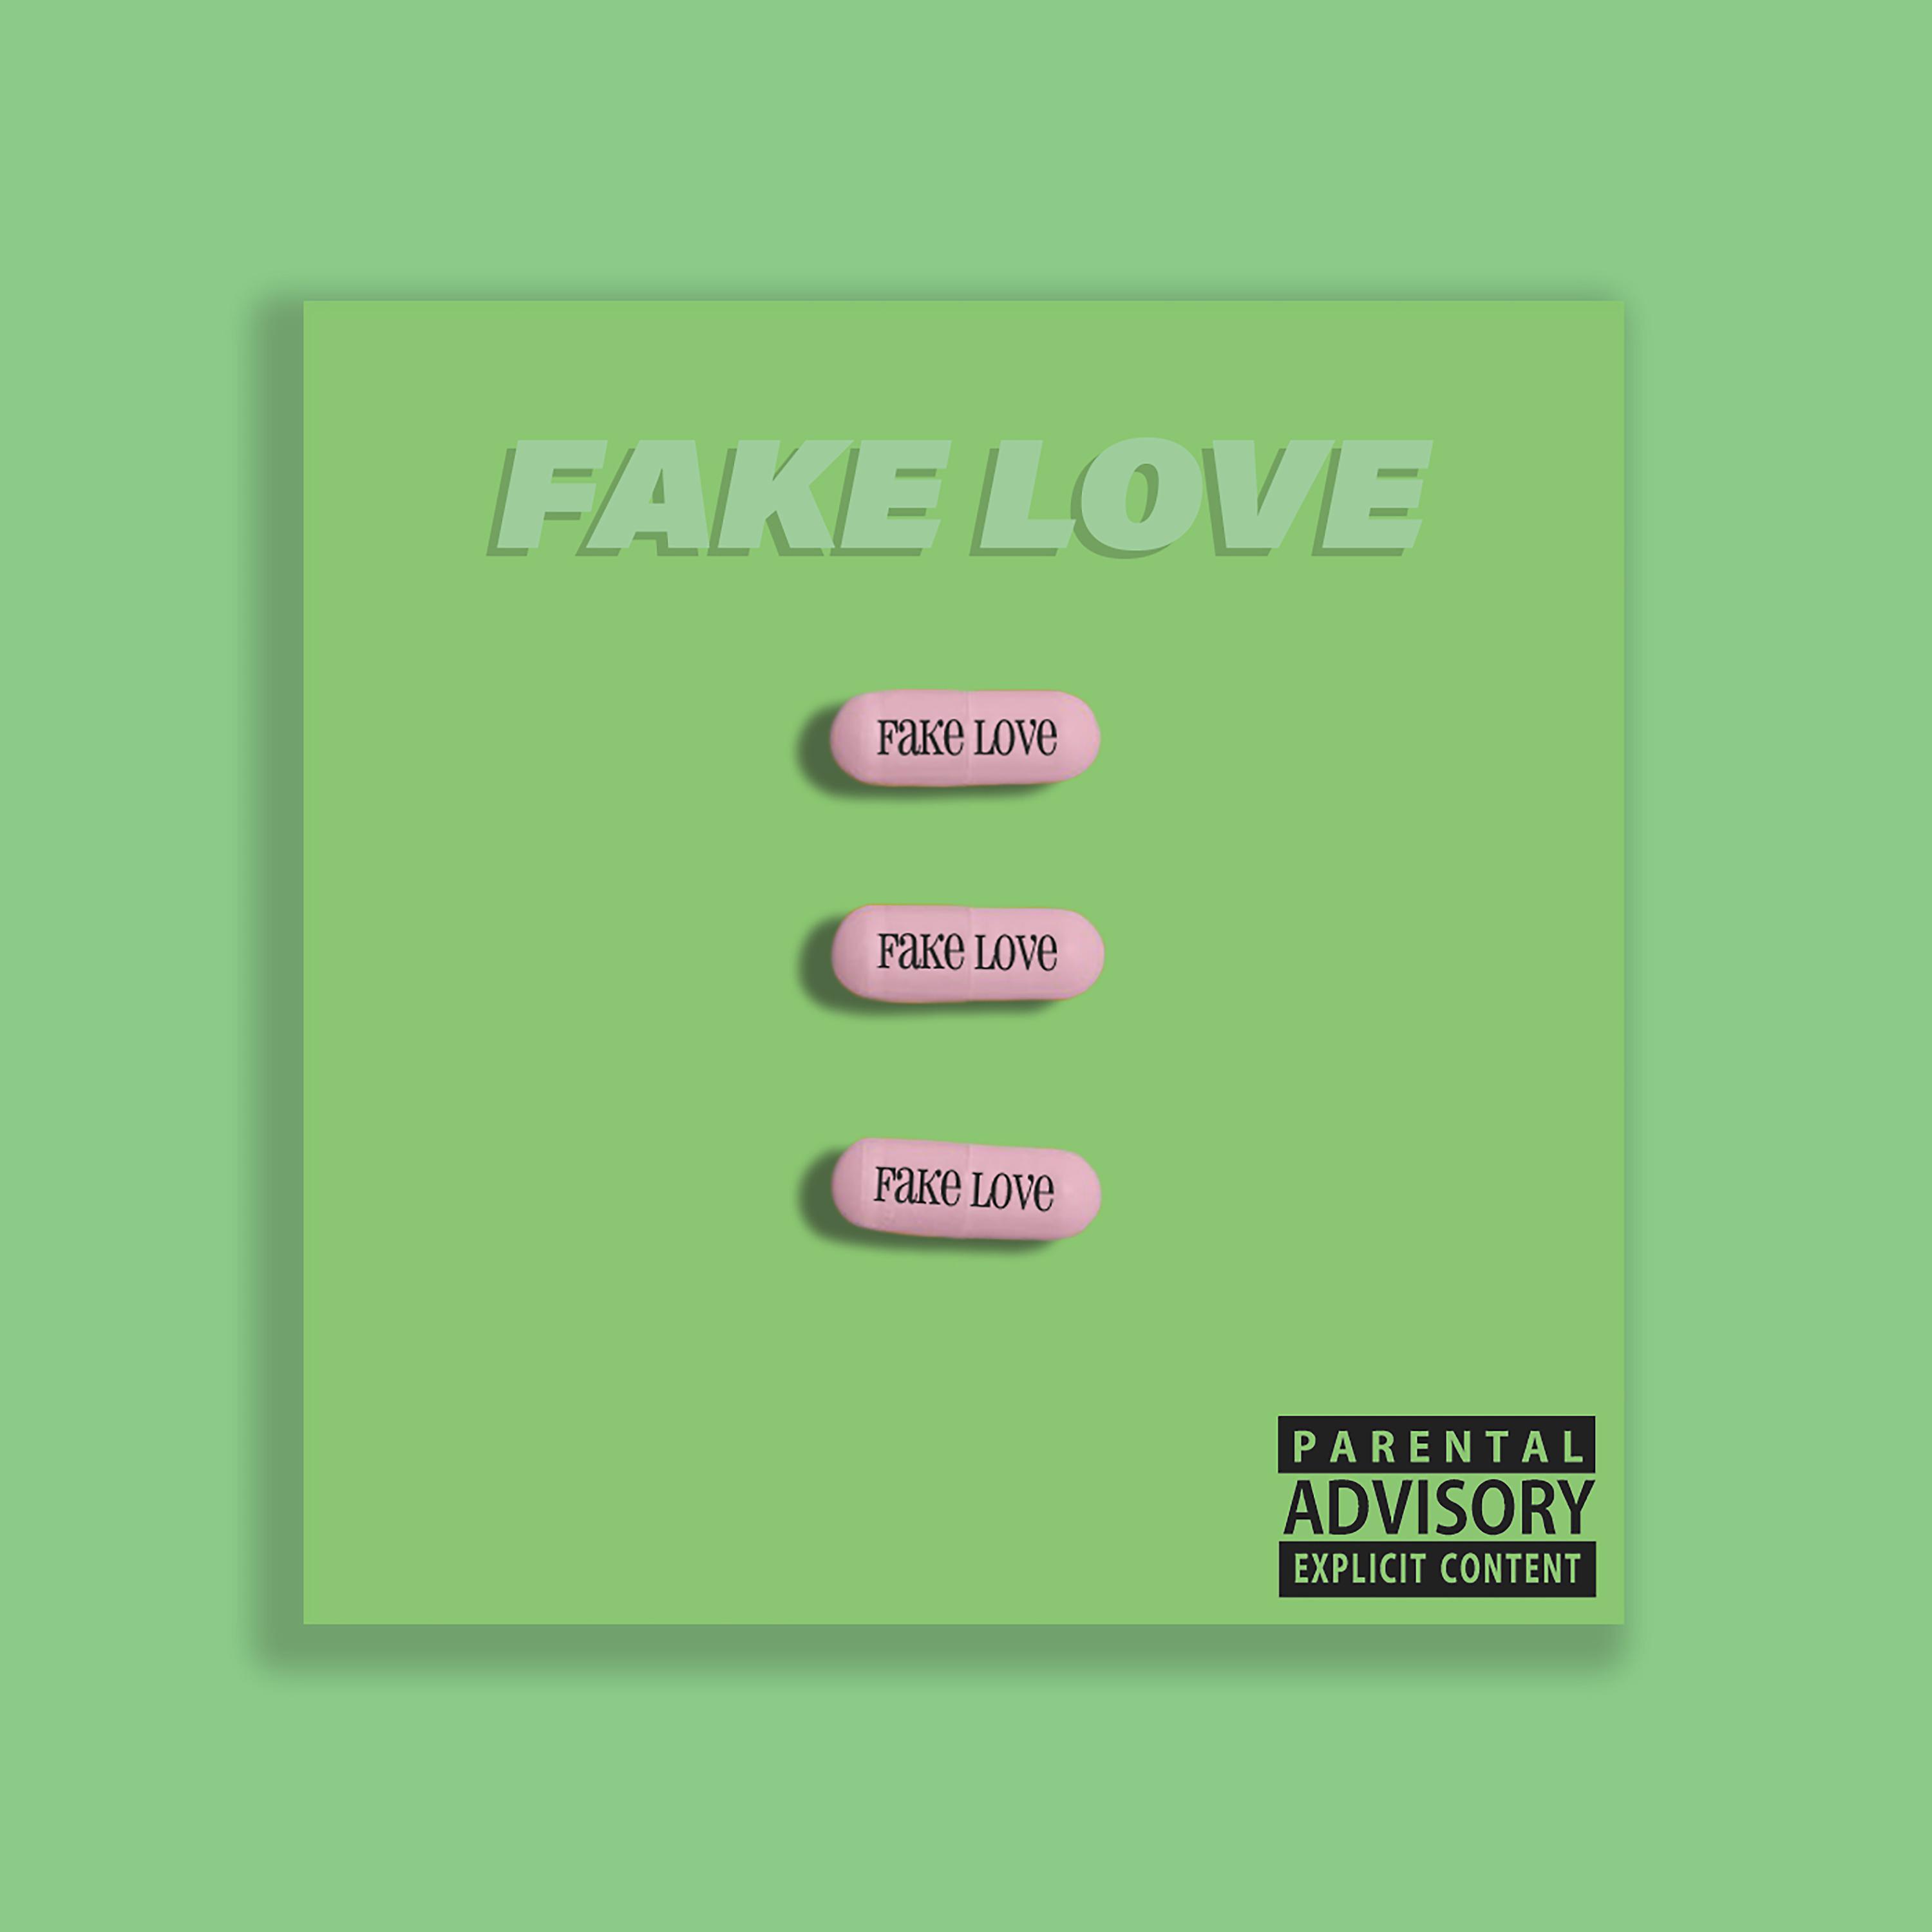 I love fake. Fake Love. Fake Love альбом. Fake Love картинки. Fake Love обложка песни.